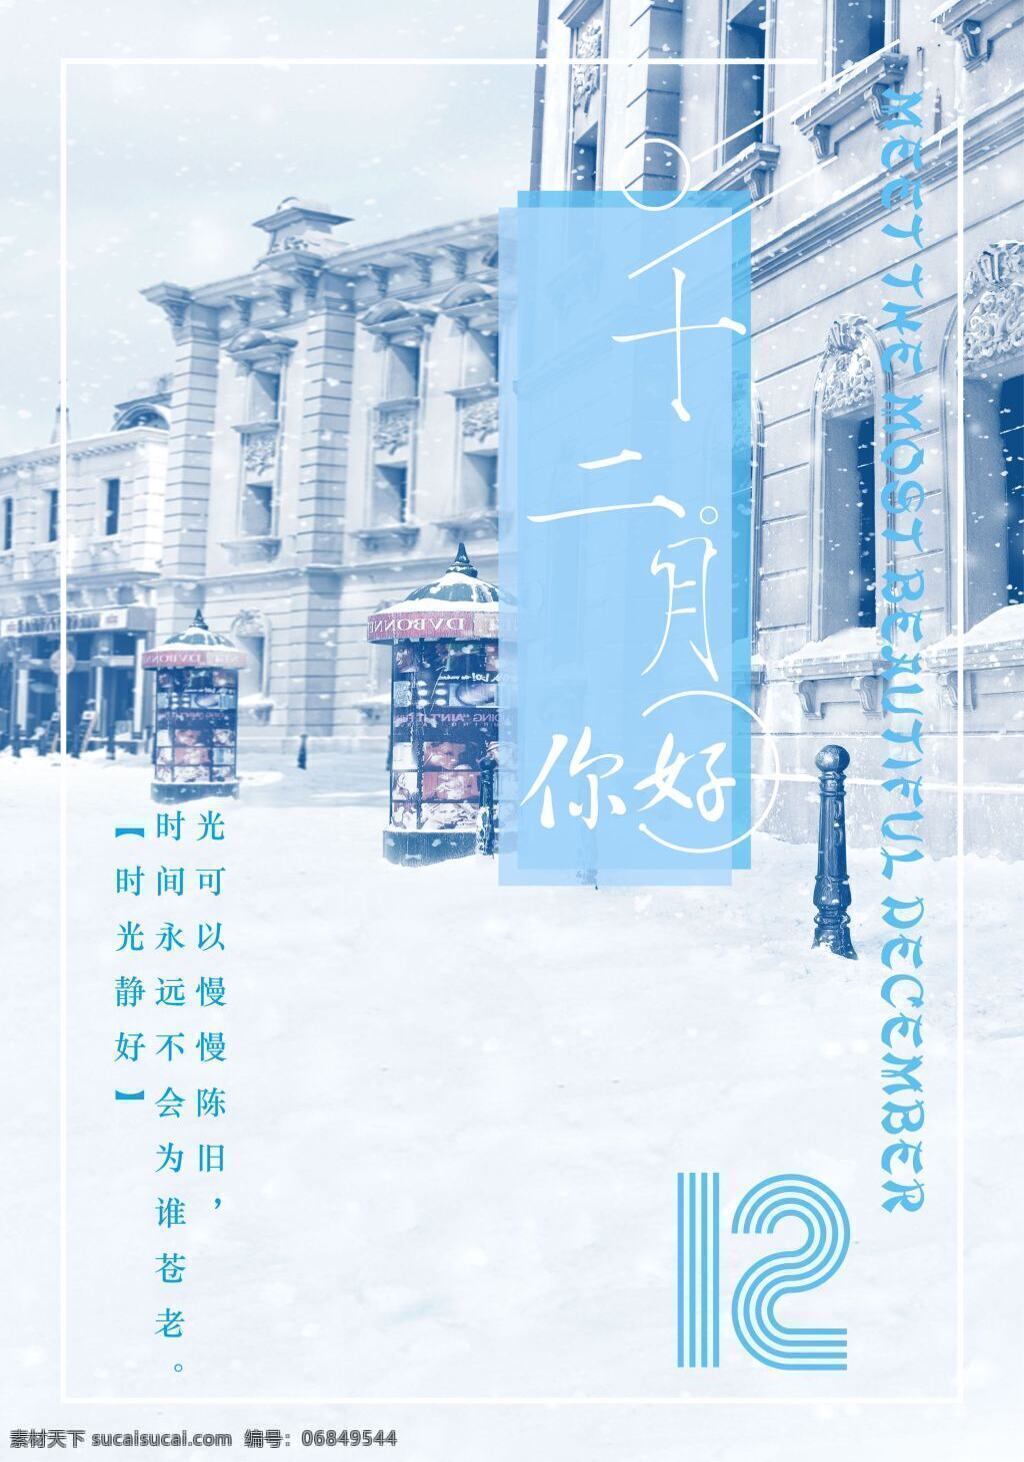 十二月 你好 清新 海报 冬天 雪地 节日 展板